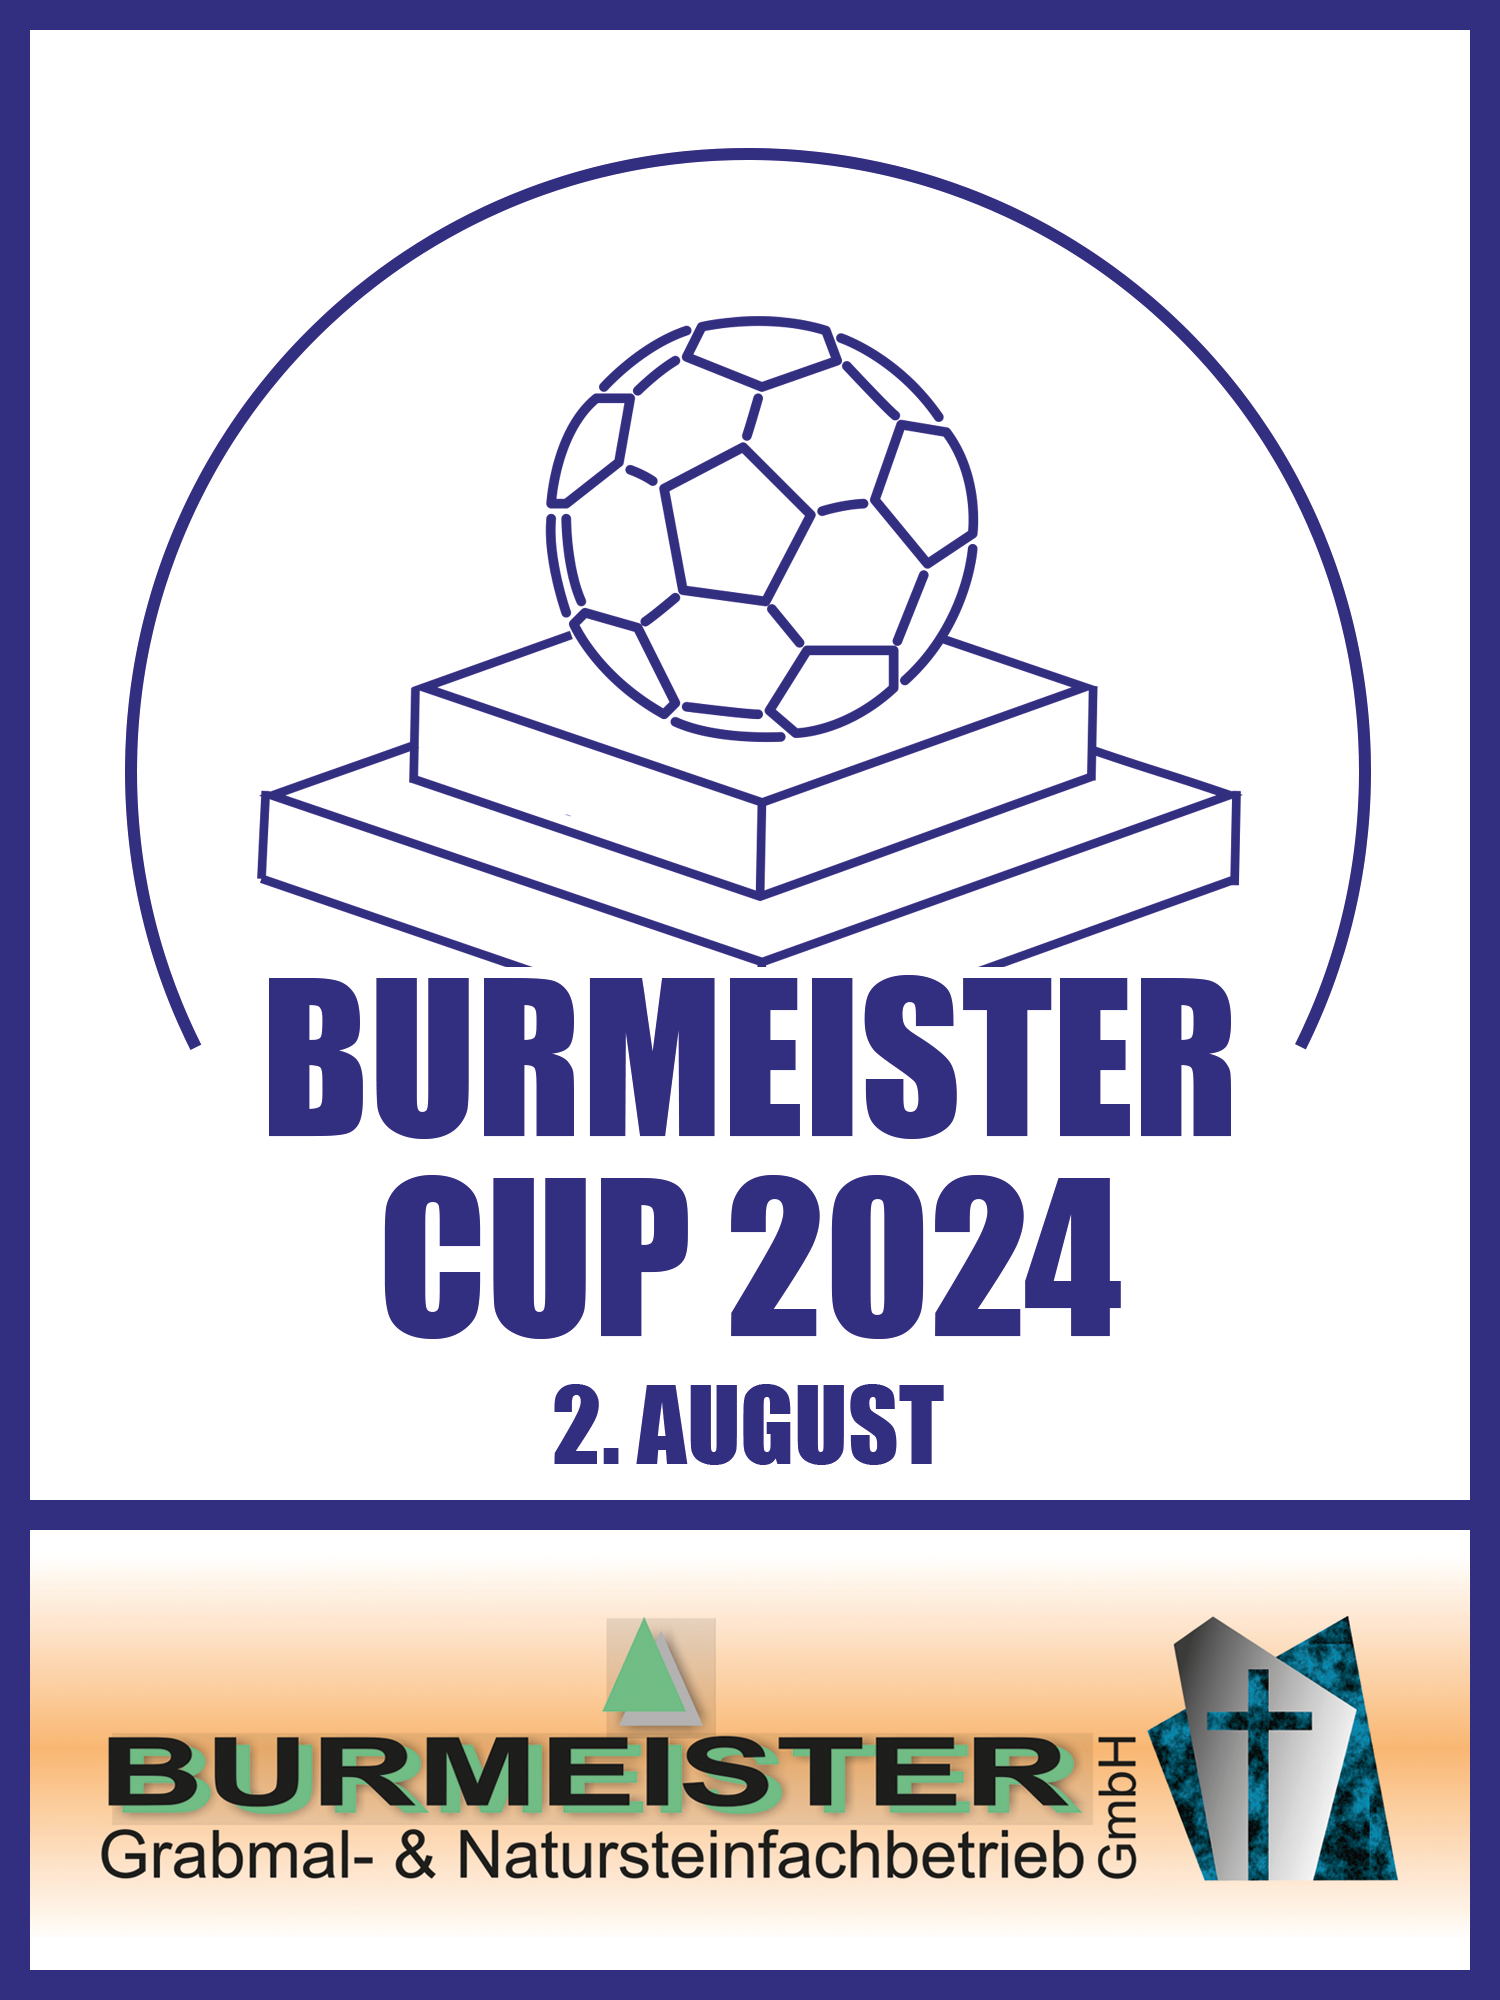 Mehr über den Artikel erfahren Burmeister Cup 2024